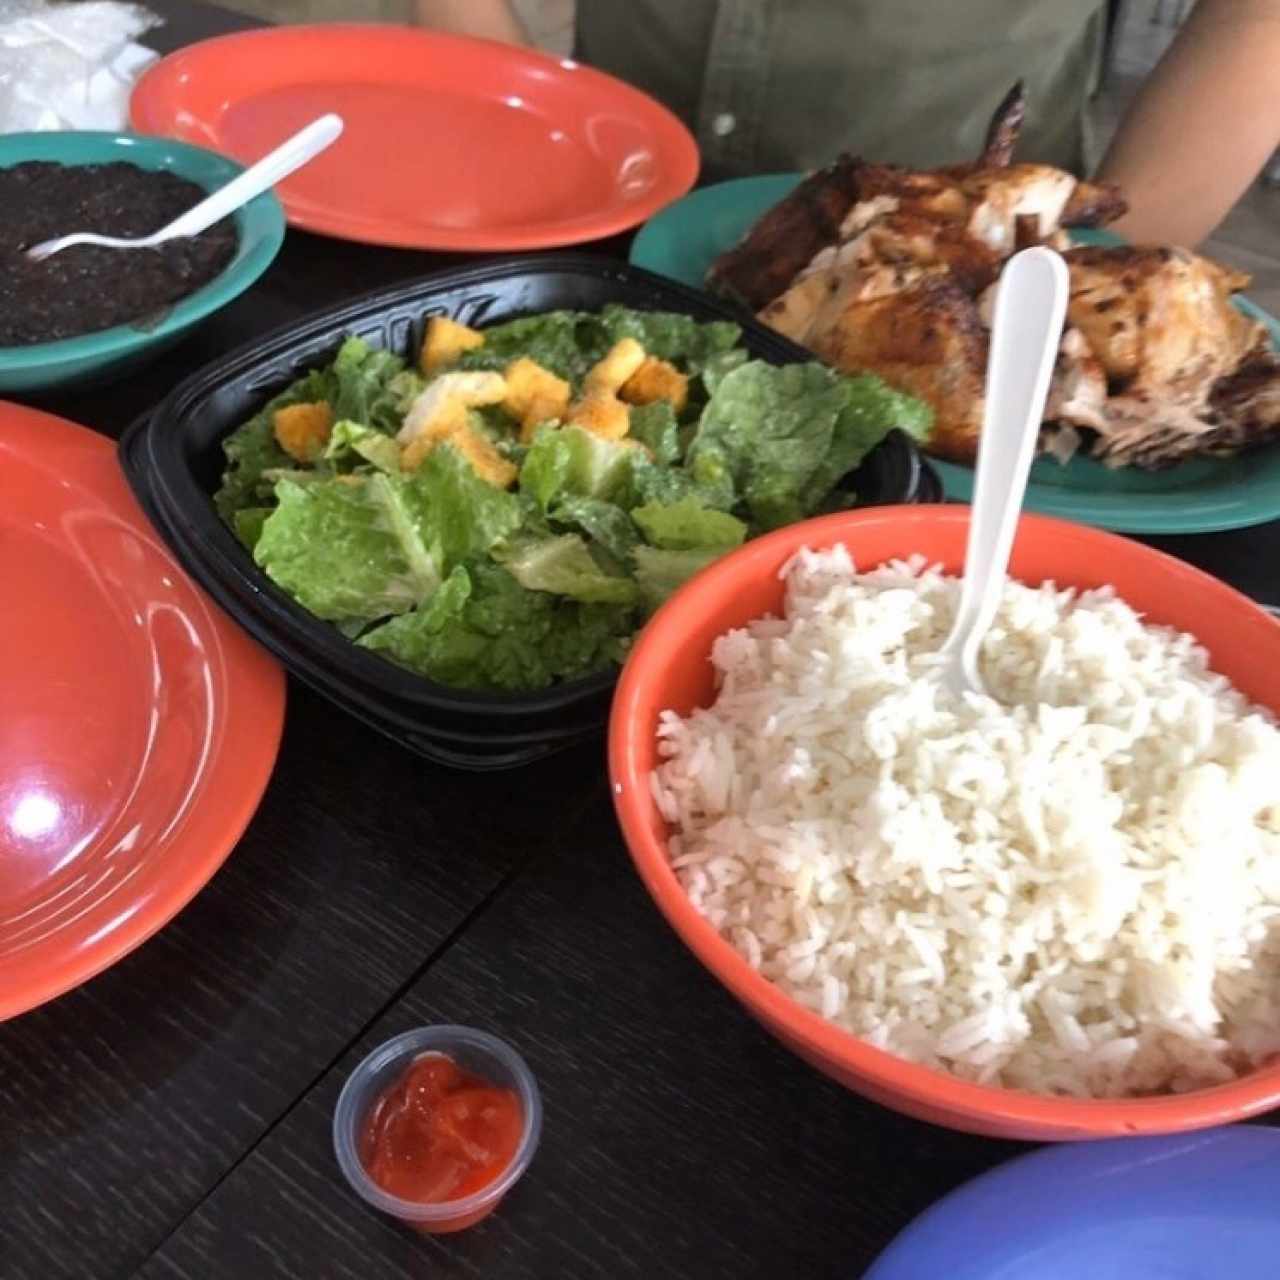 Pollo ordeado con arroz blanco, frijoles y ensalada cesar